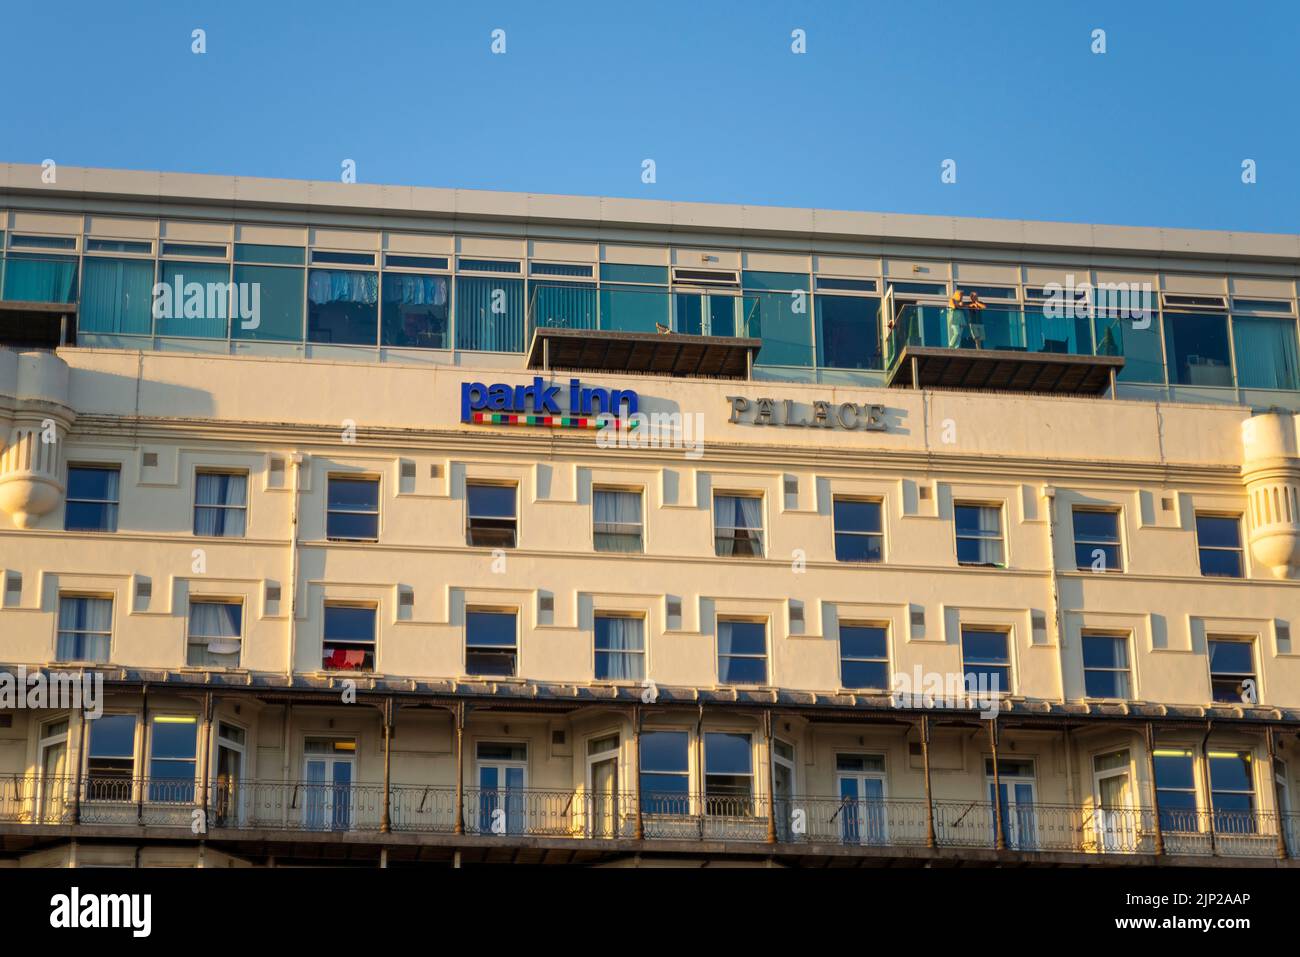 Die Leute blicken vom Balkon aus auf Park Inn Palace, Palace Hotel, Pier Hill, Marine Parade, Southend on Sea, Essex. Am Meer gelegenes Hotel, das am späten Abend erstrahlt Stockfoto